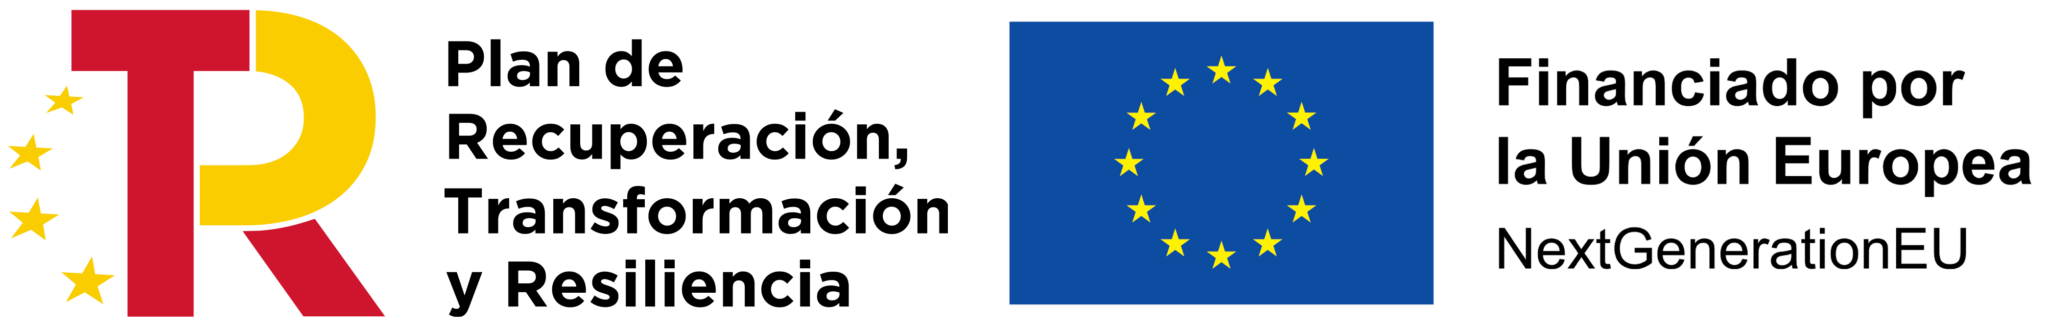 logos-plan-recuperacion-union-europea-2048x327